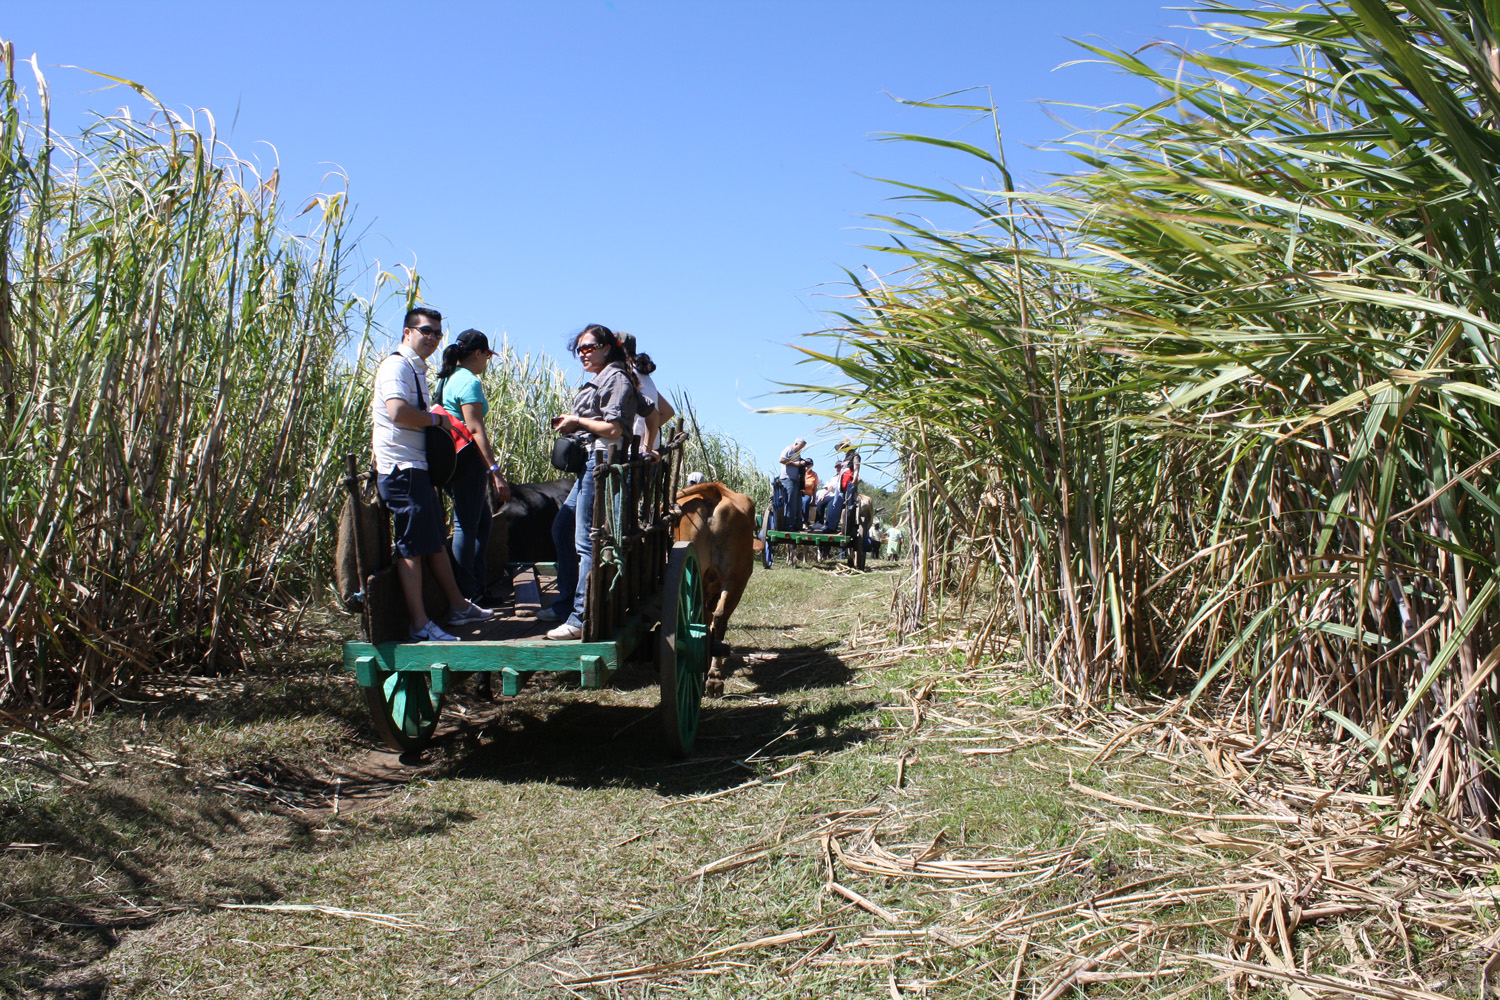 Oxen cart ride through sugar cane plantations.